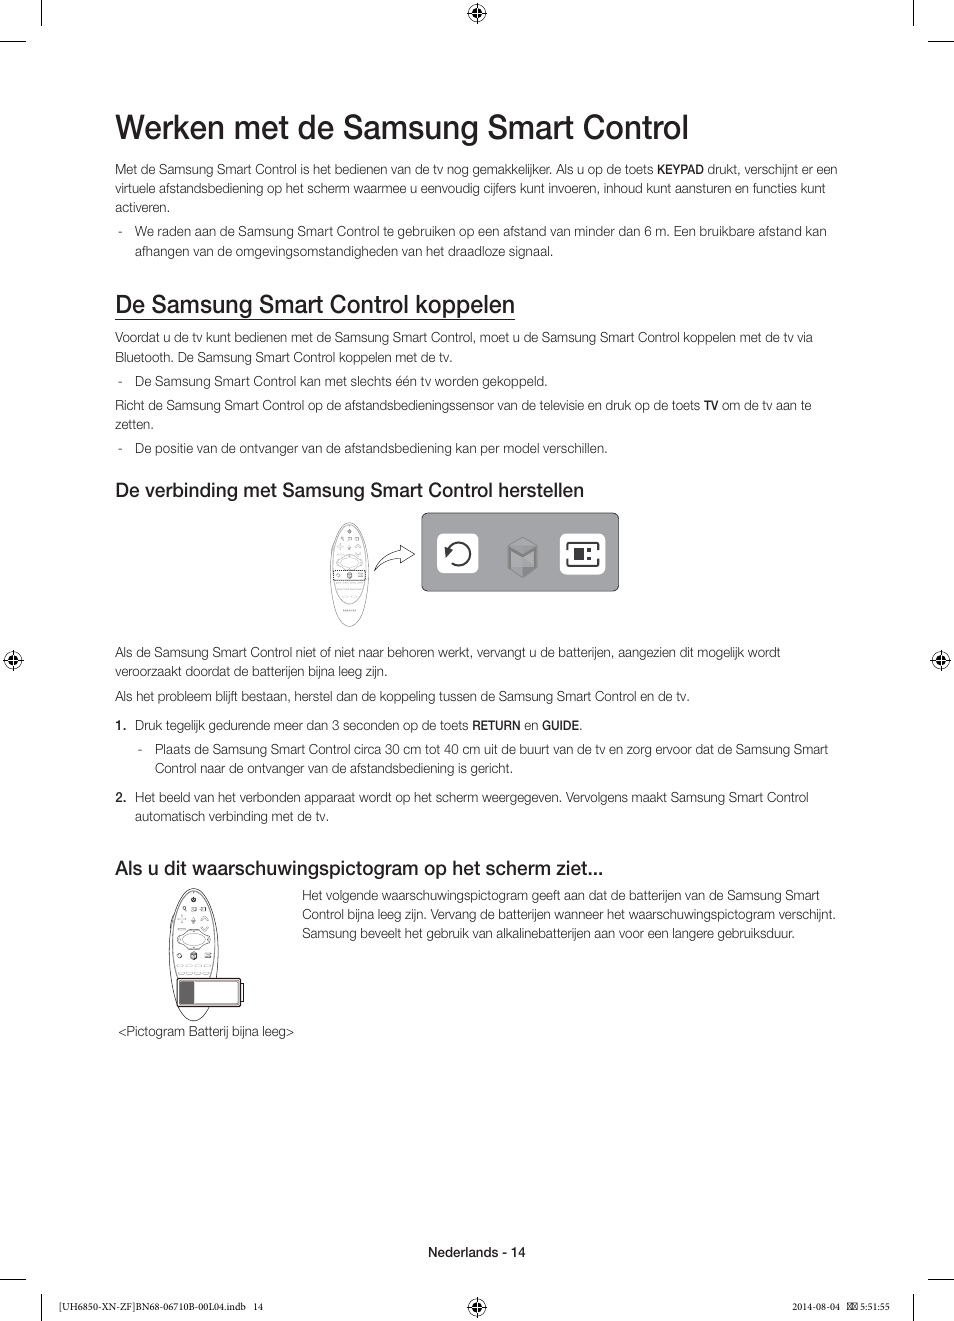 Werken met de samsung smart control, De samsung smart control koppelen, De  verbinding met samsung smart control herstellen | Samsung UE48H6850AW User  Manual | Page 80 / 90 | Original mode